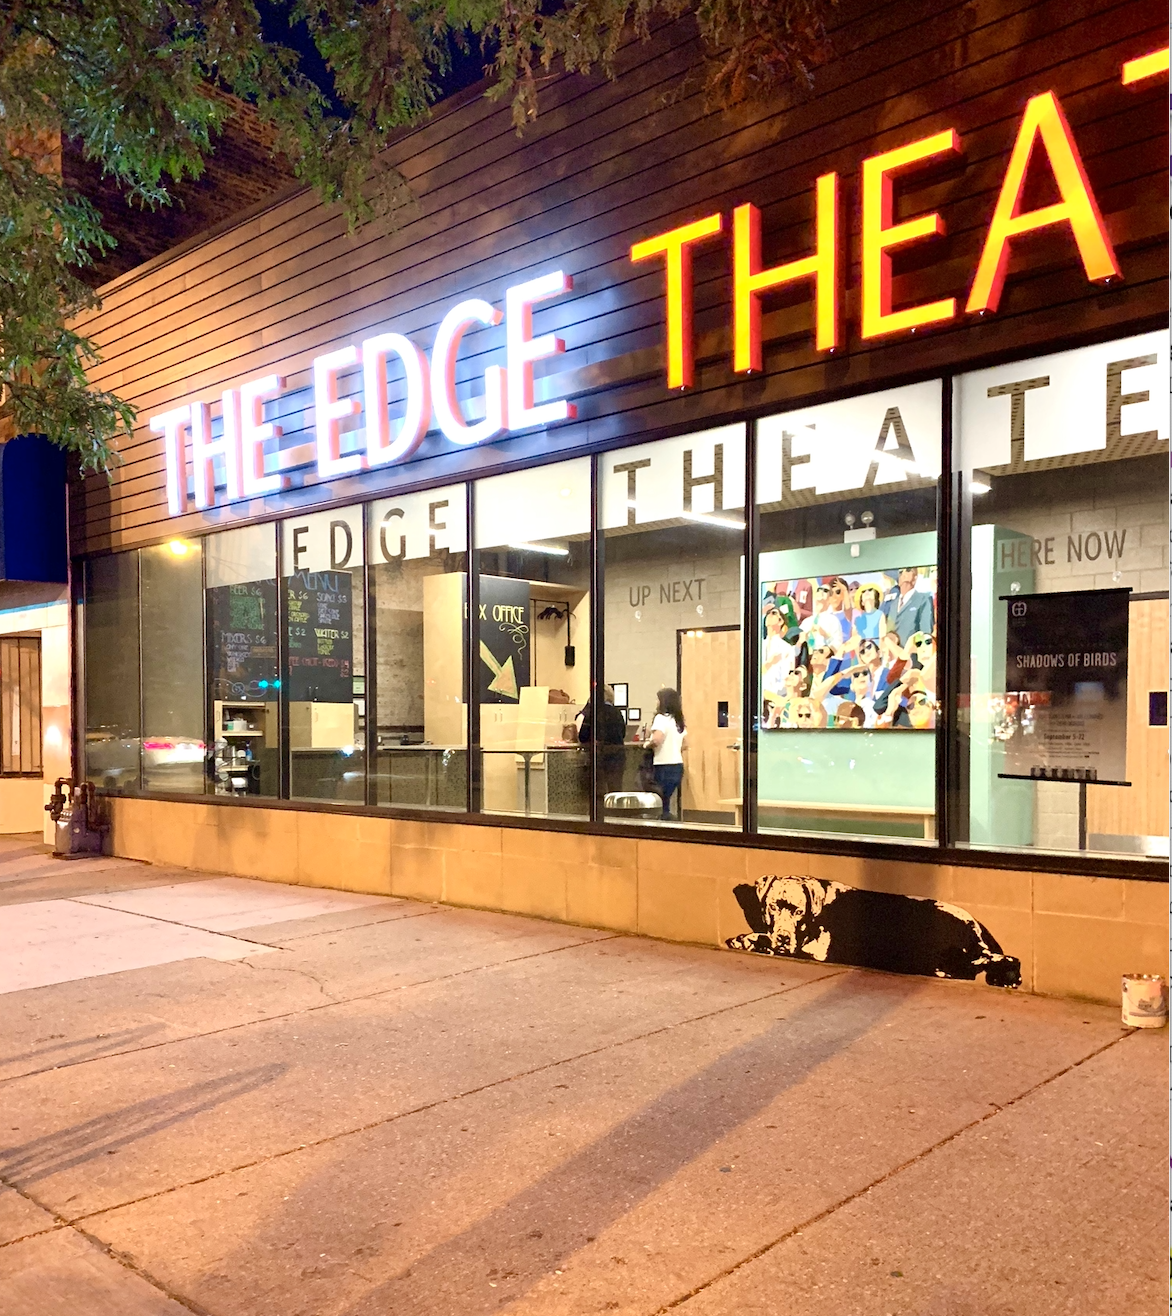 Edgewater Theater - Dog mural 